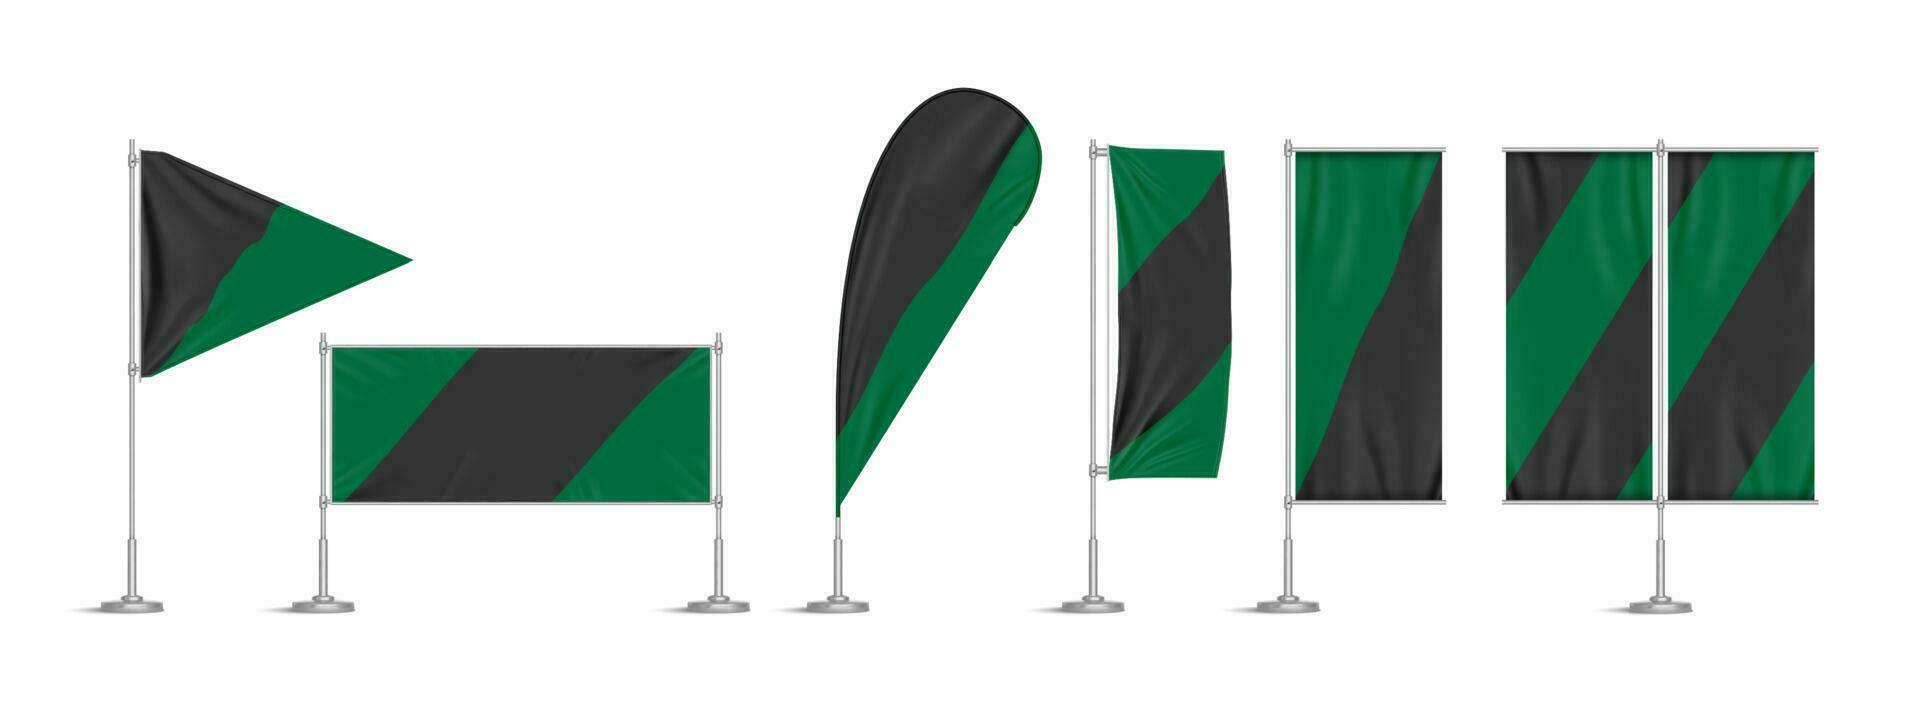 grön och svart vinyl flaggor och banderoller på Pol vektor